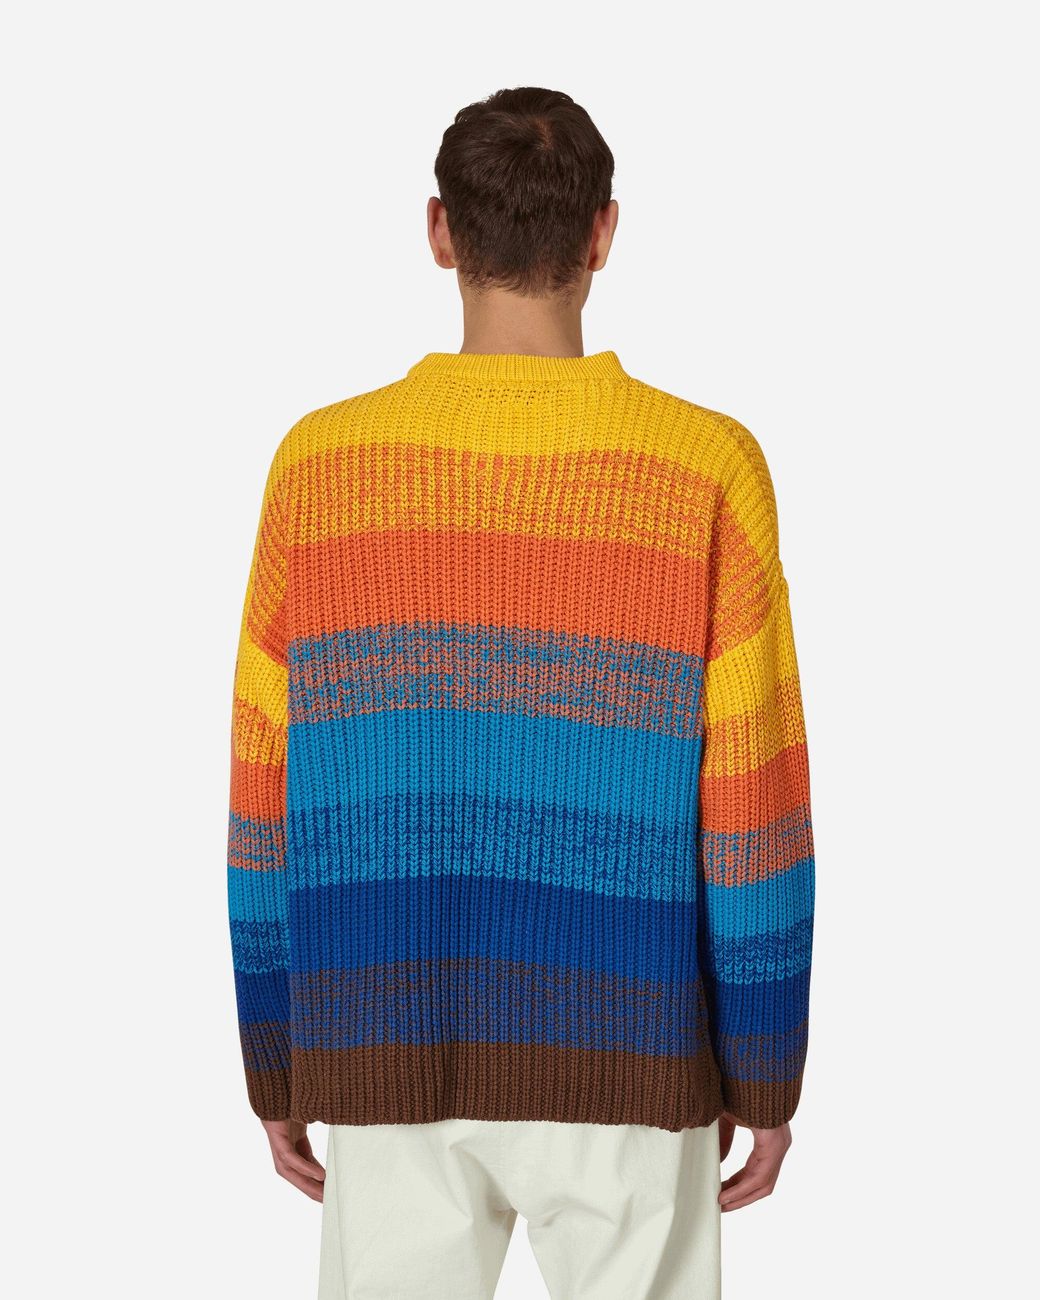 kqetty Knit Sweater Men Men's Solid Color Cozy Round Neck Plain